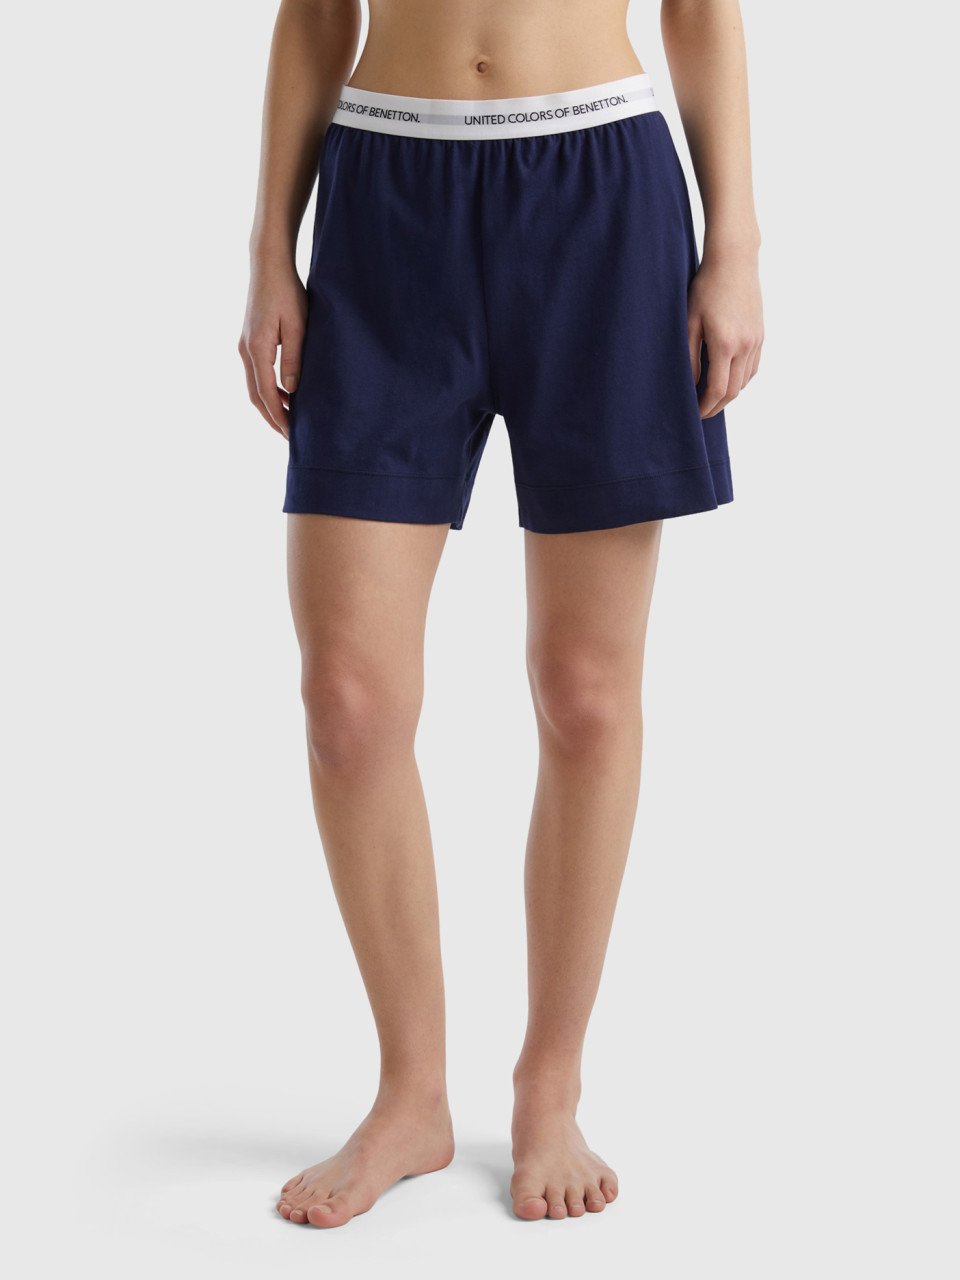 Benetton, Shorts Con Elástico Con Logotipo, Azul Oscuro, Mujer